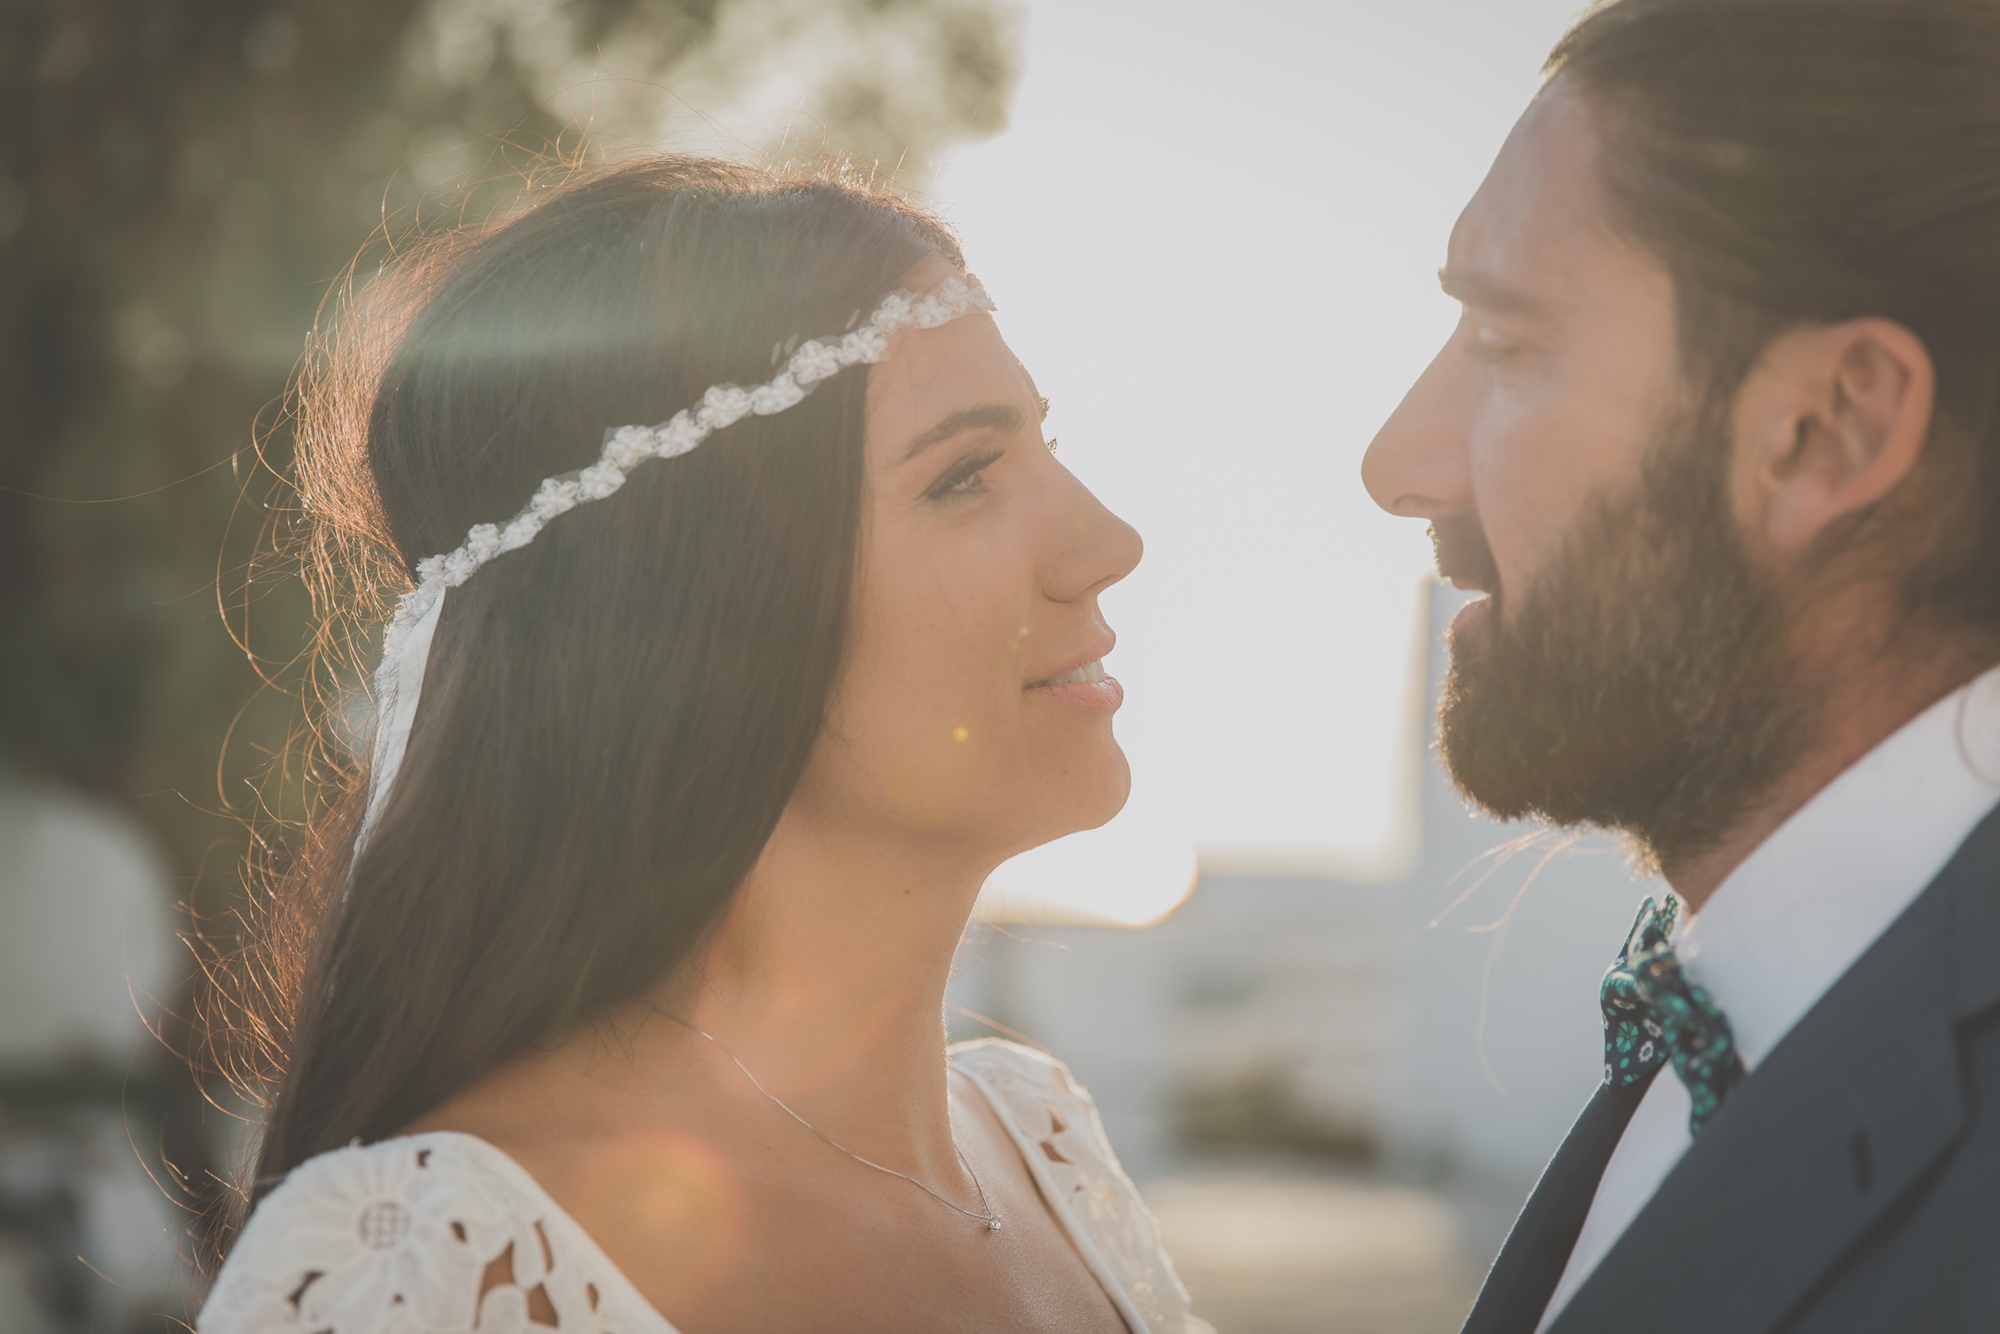 A wonderful fall wedding in Patmos